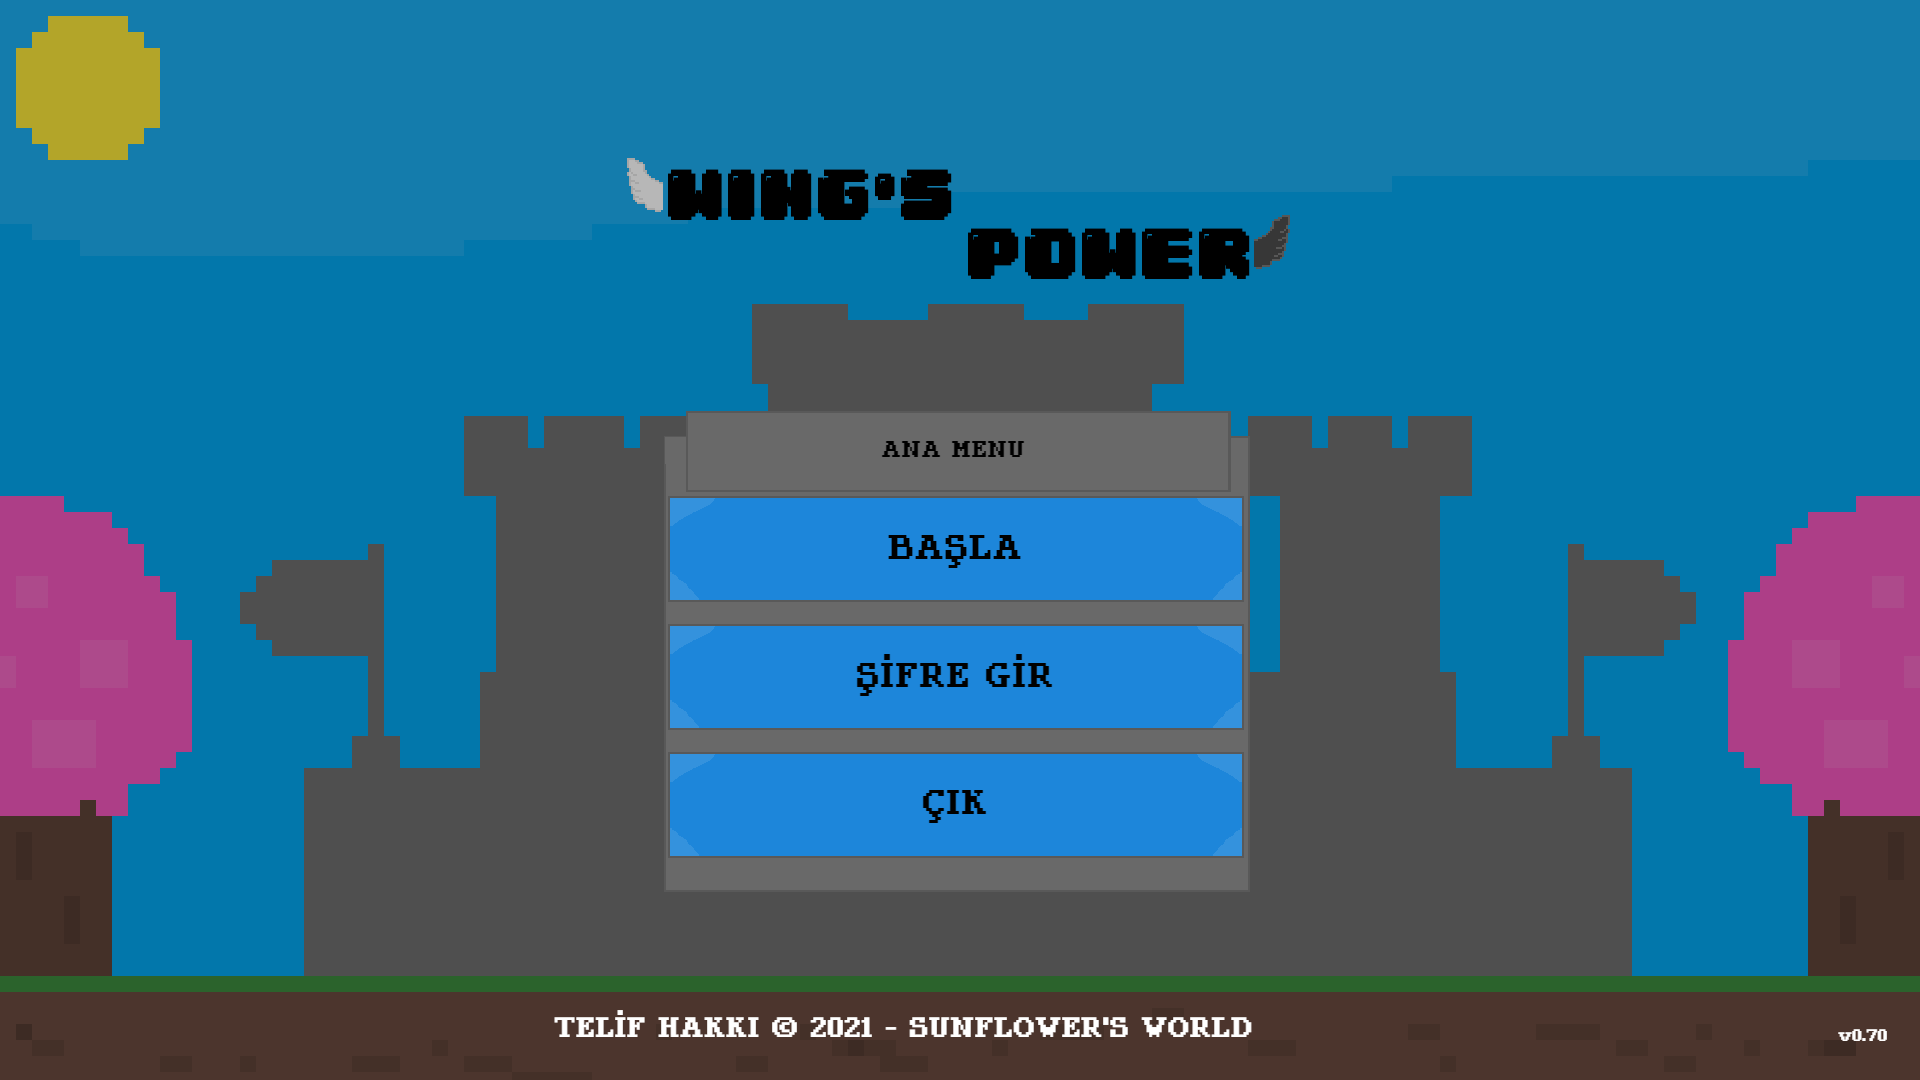 wings-power-menu-22.08.2021.png